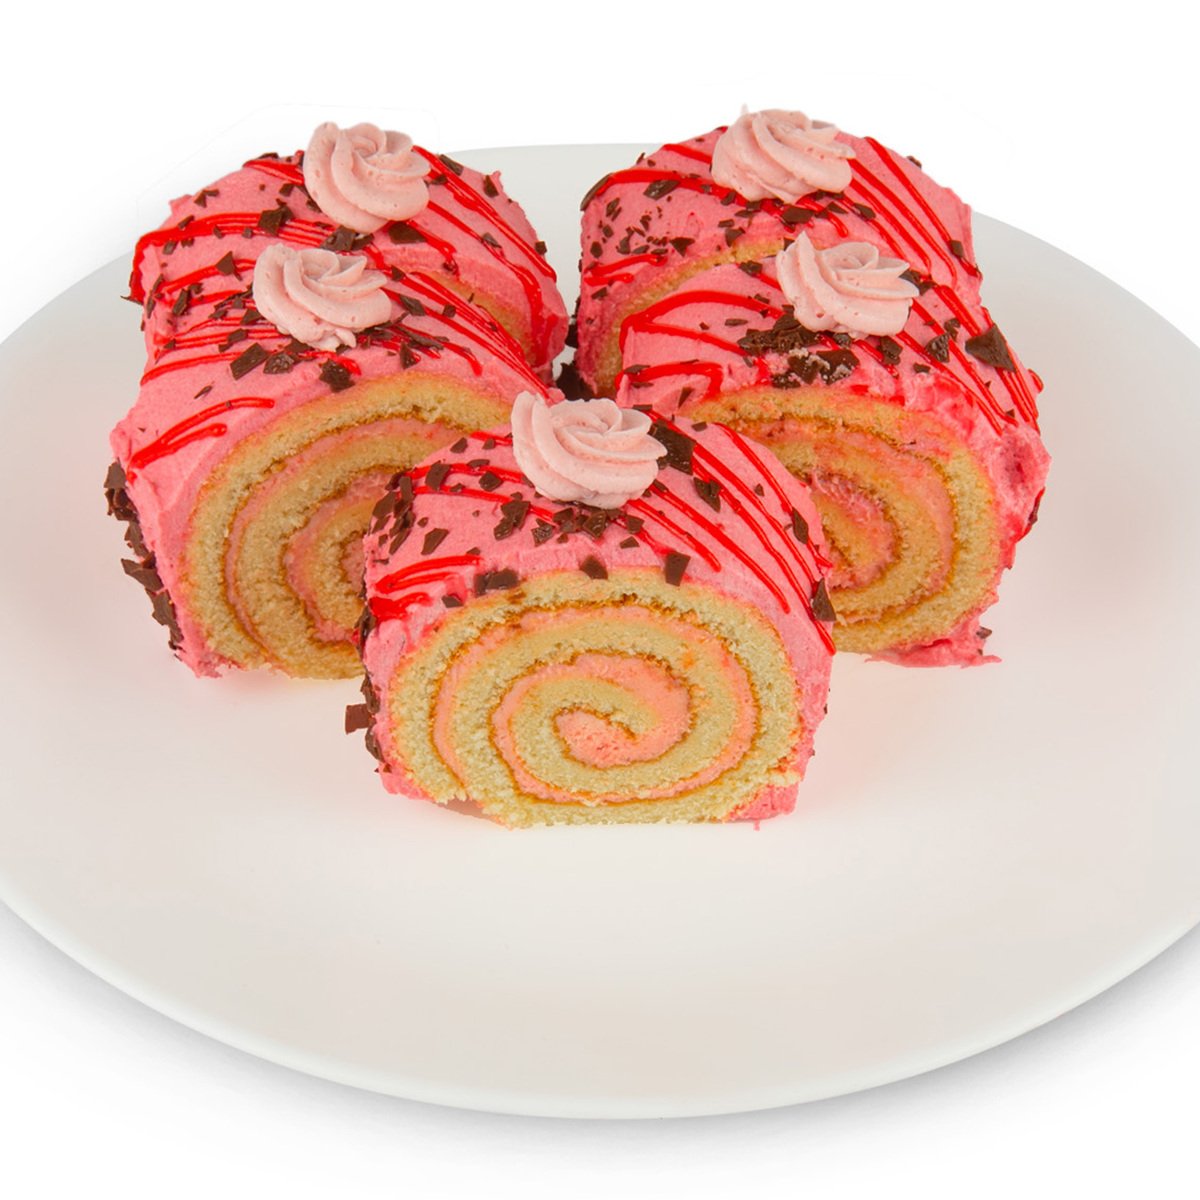 اشتري قم بشراء سويس رول فراولة 5 قطع Online at Best Price من الموقع - من لولو هايبر ماركت Pre Pack Cakes في الامارات